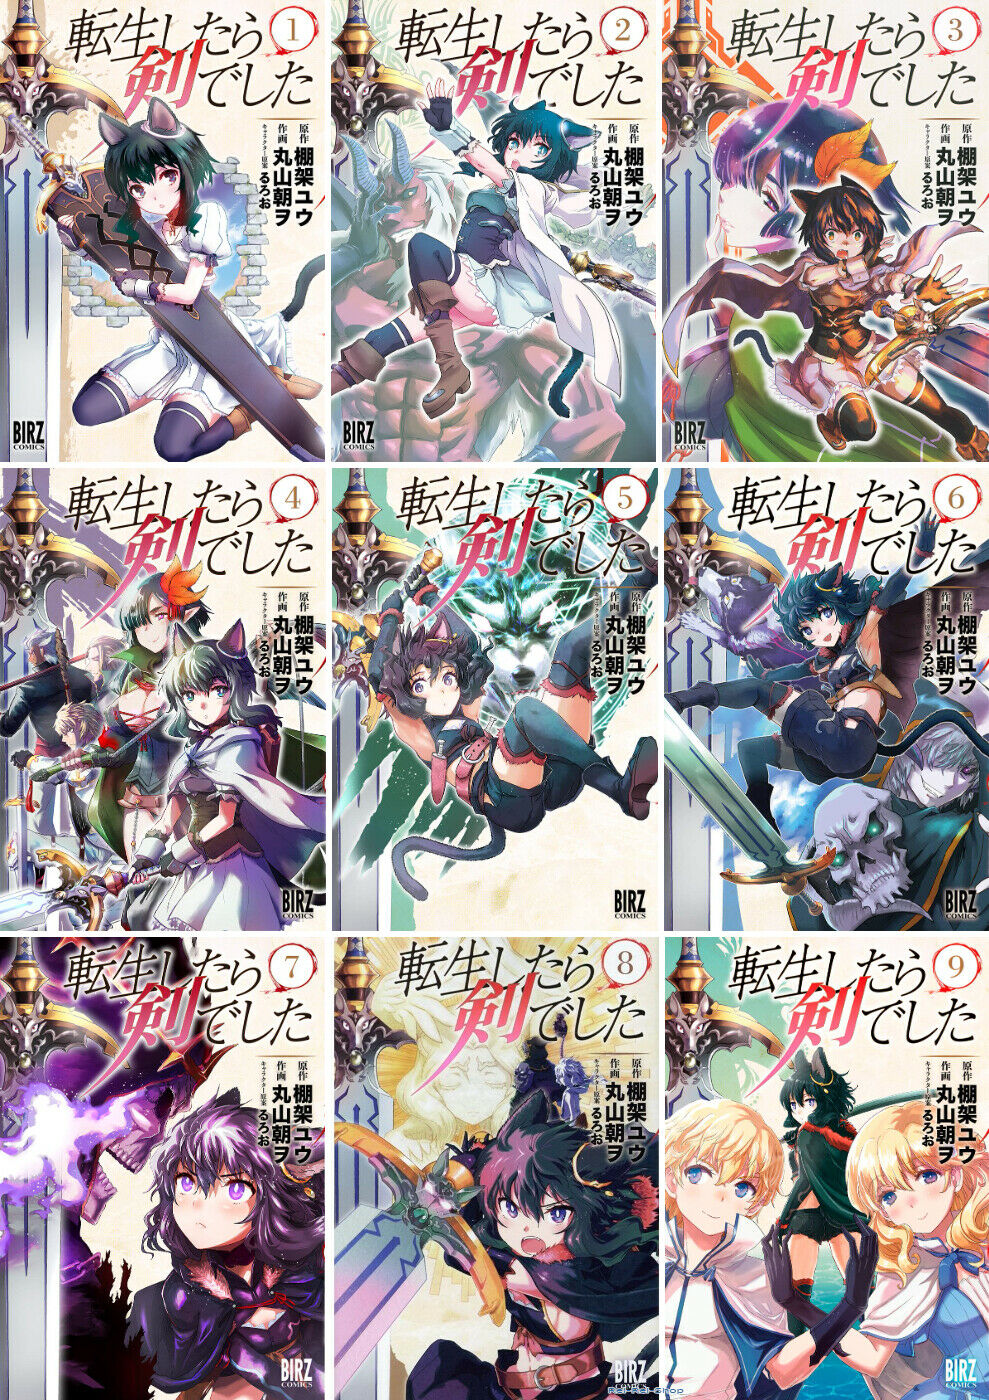 Japanese Manga Boys Comic Book Tensei Shitara Ken Deshita vol.1-9 set New